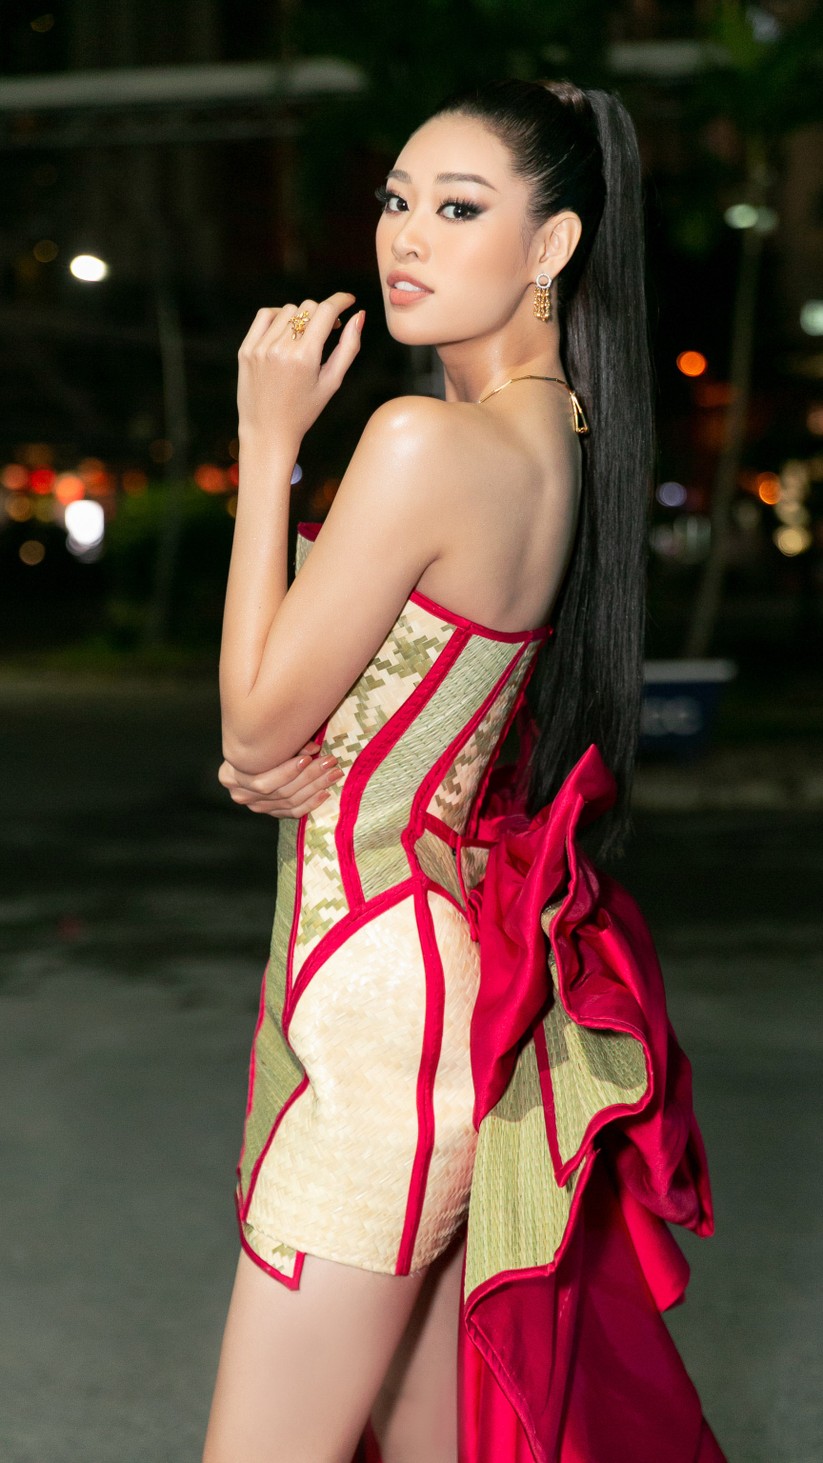 Hoa hậu Khánh Vân mặc trang phục với thông điệp bảo vệ làng nghề làm chiếu ảnh 3